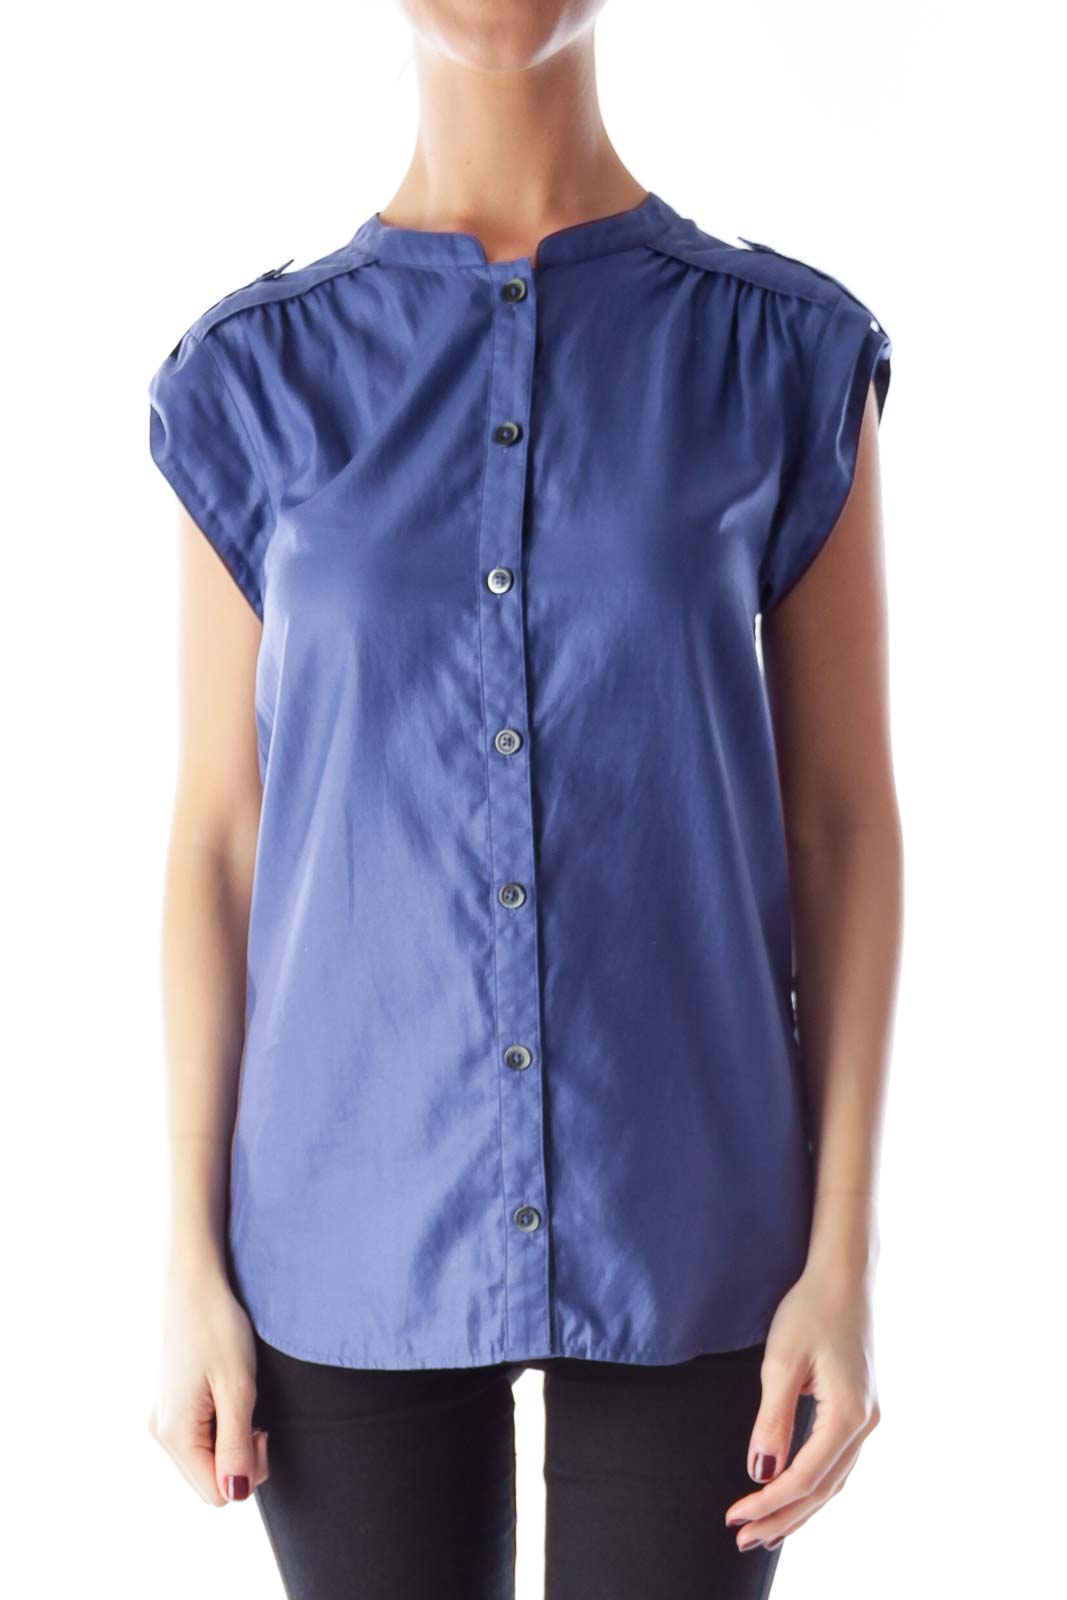 Blue Short Sleeve Shirt Front